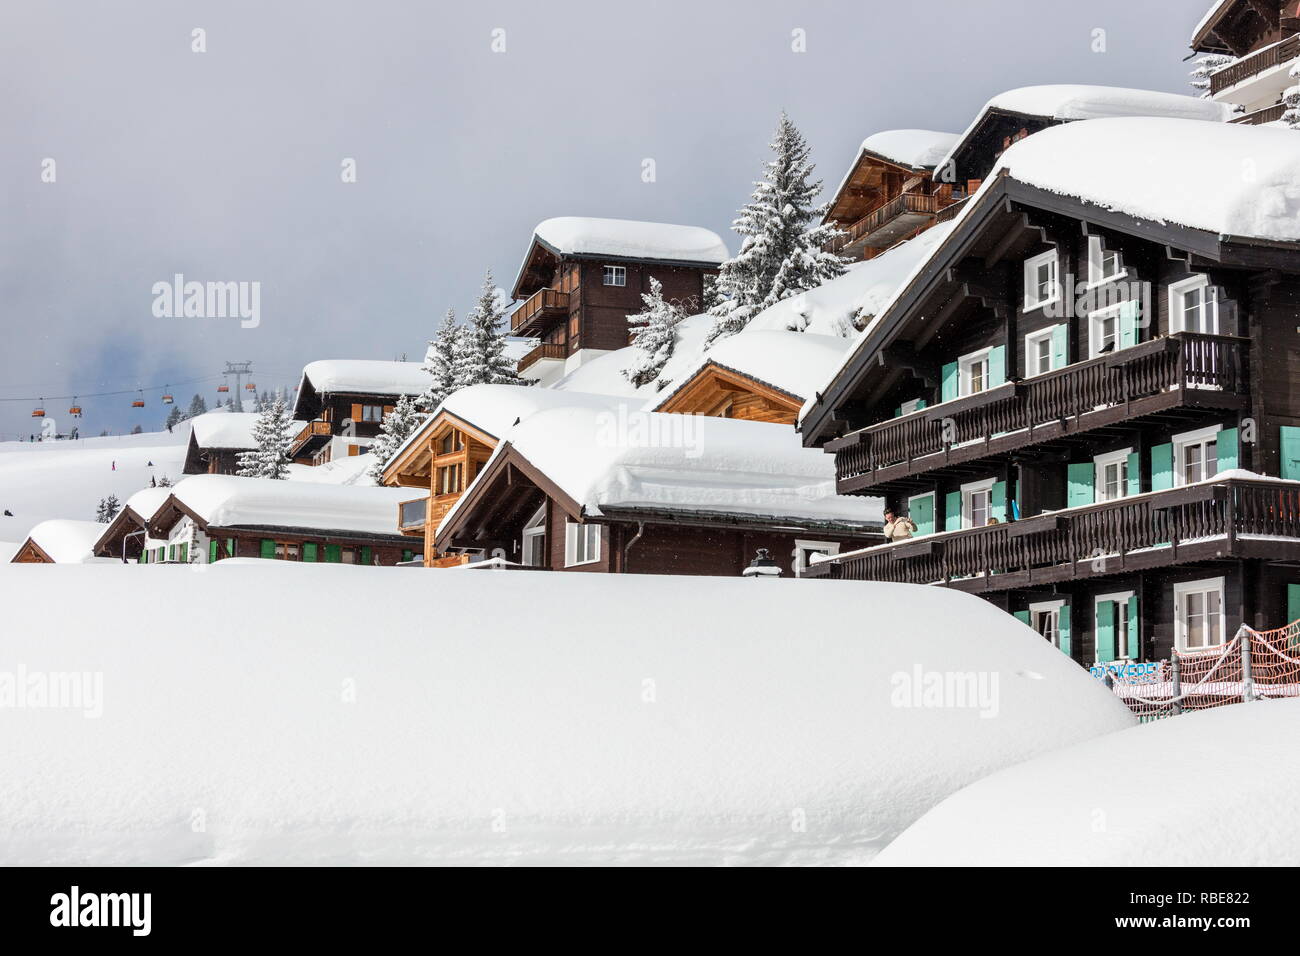 La neige et les maisons en bois dans le village alpin et sky resort Bettmeralp Française, canton du Valais Suisse Europe Banque D'Images